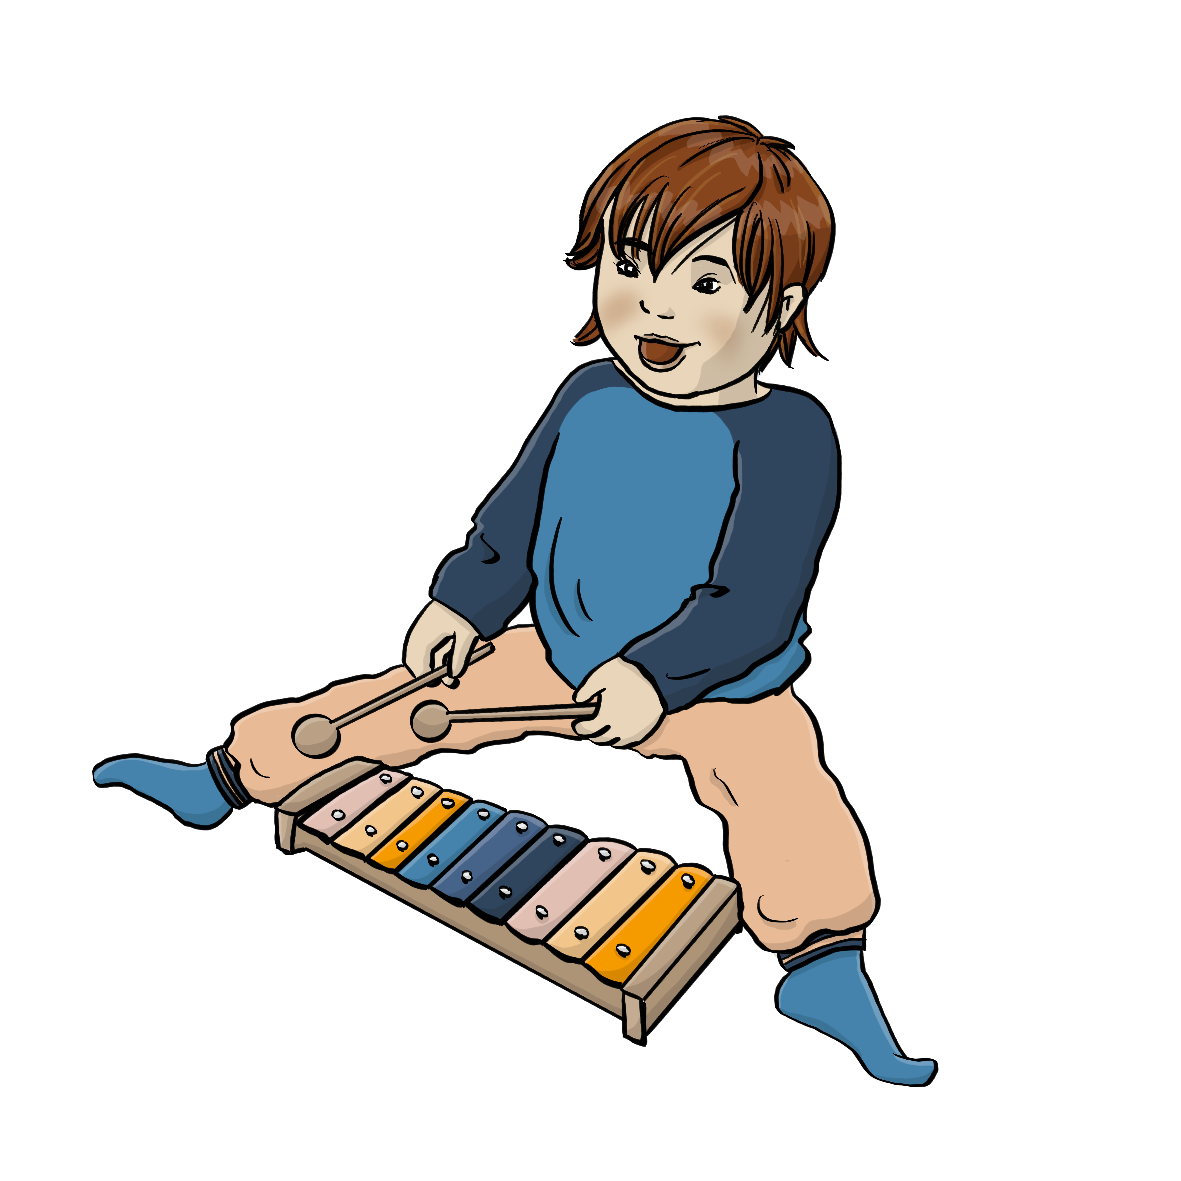 Ein Kleinkind spielt auf einem Glockenspiel.